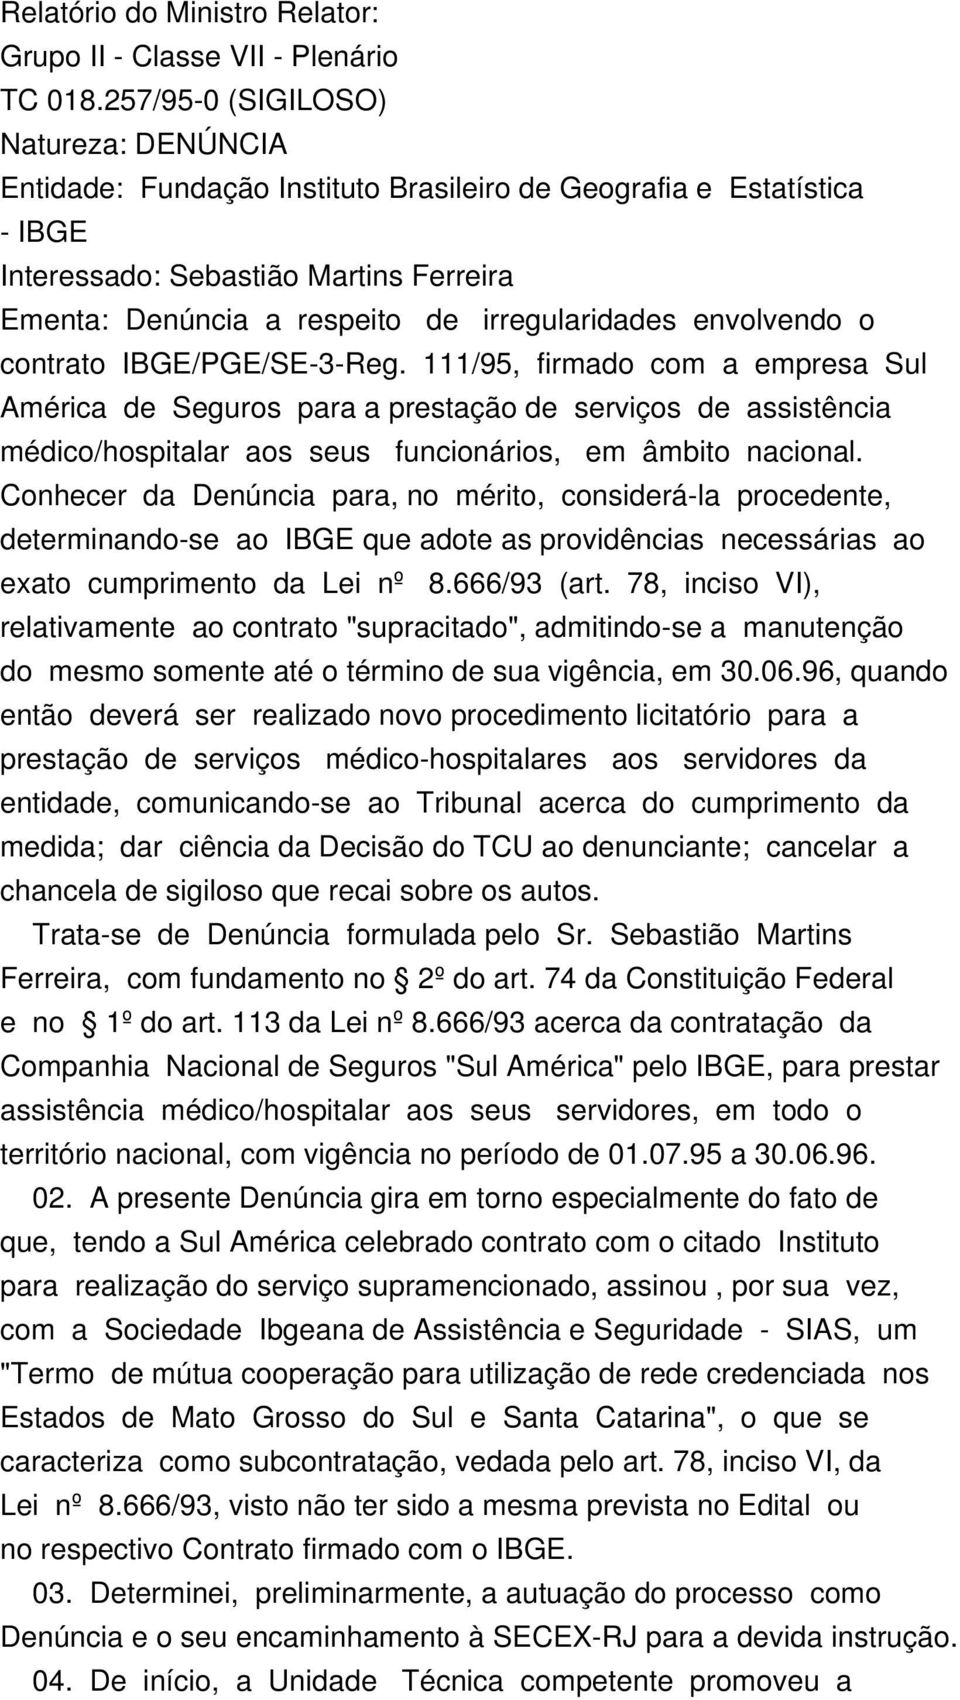 envolvendo o contrato IBGE/PGE/SE-3-Reg. 111/95, firmado com a empresa Sul América de Seguros para a prestação de serviços de assistência médico/hospitalar aos seus funcionários, em âmbito nacional.